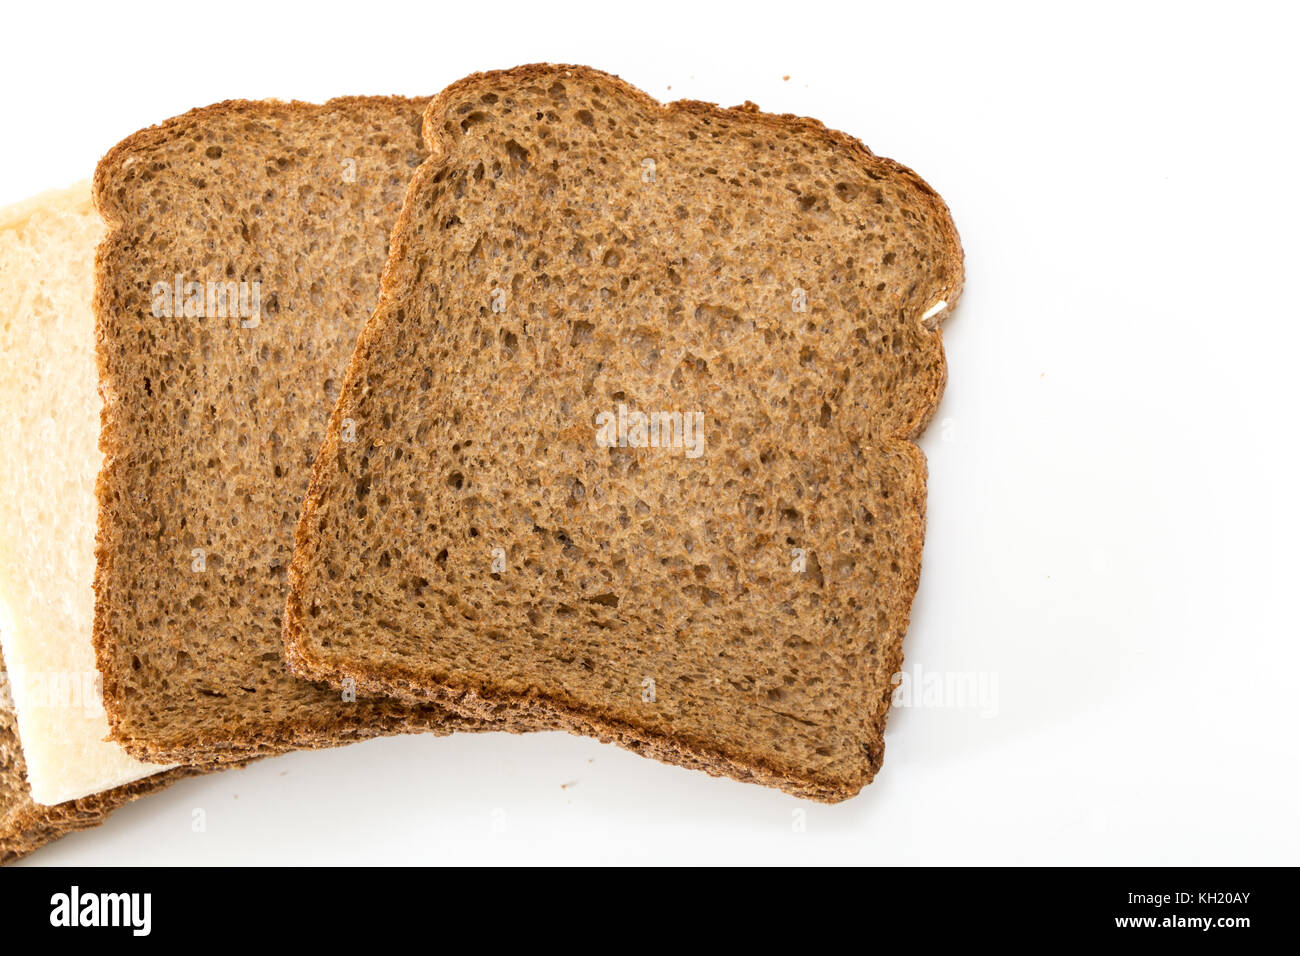 Tranches de pain de grains entiers avec une tranche de blanc, sur fond blanc. Banque D'Images